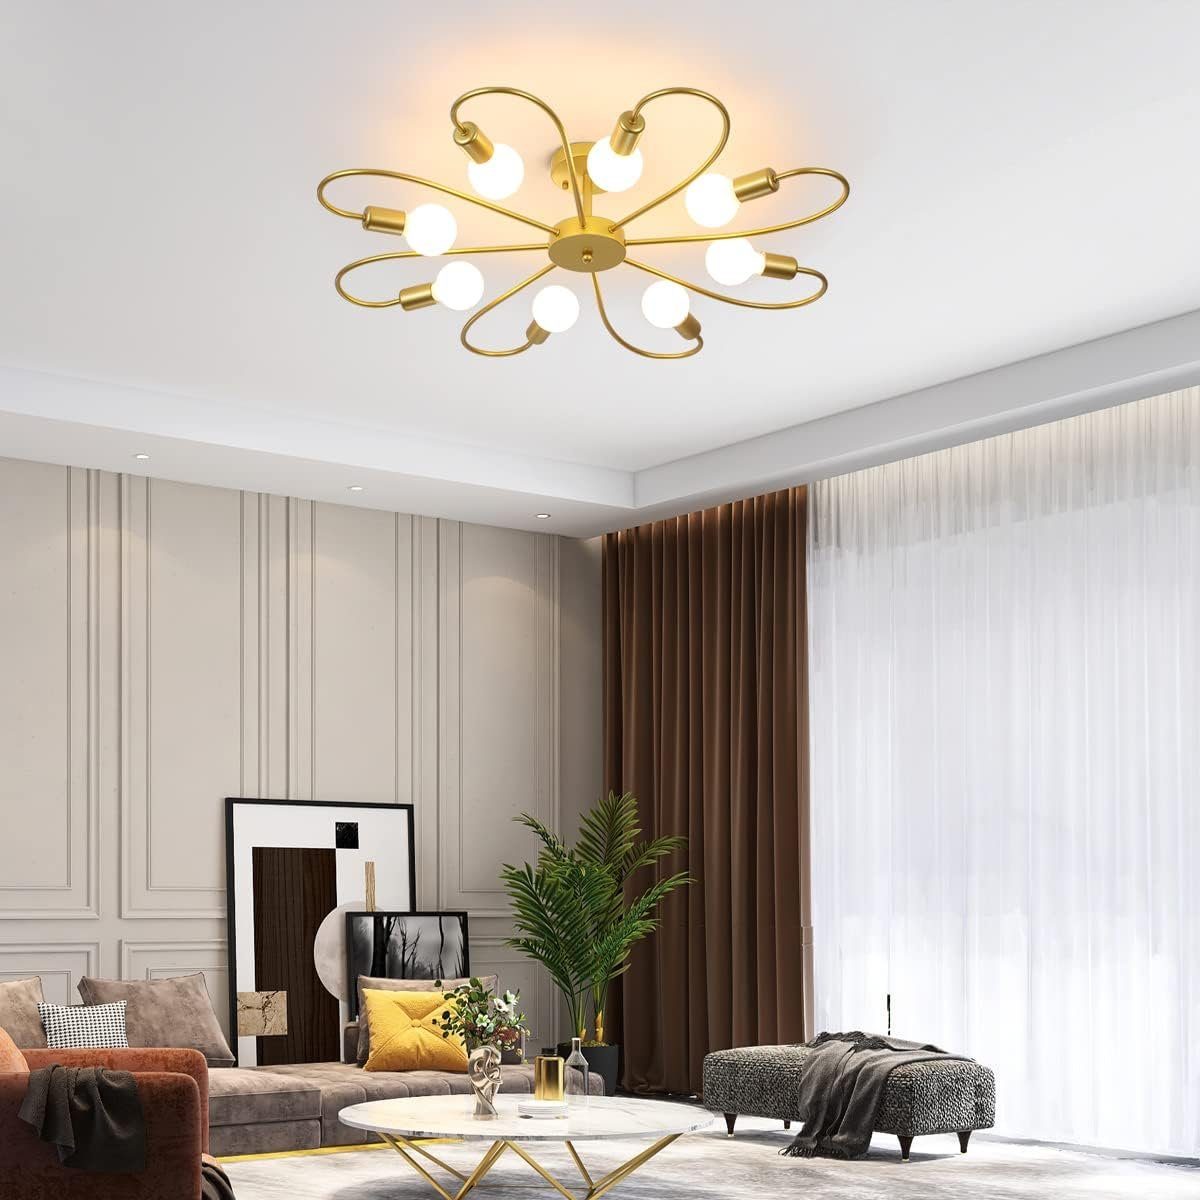 DOPWii Gold Deckenleuchte Wohnzimmer,82*15cm,E27,Keine Köpfe 8 20-30m² Glühbirne für Deckenlampe